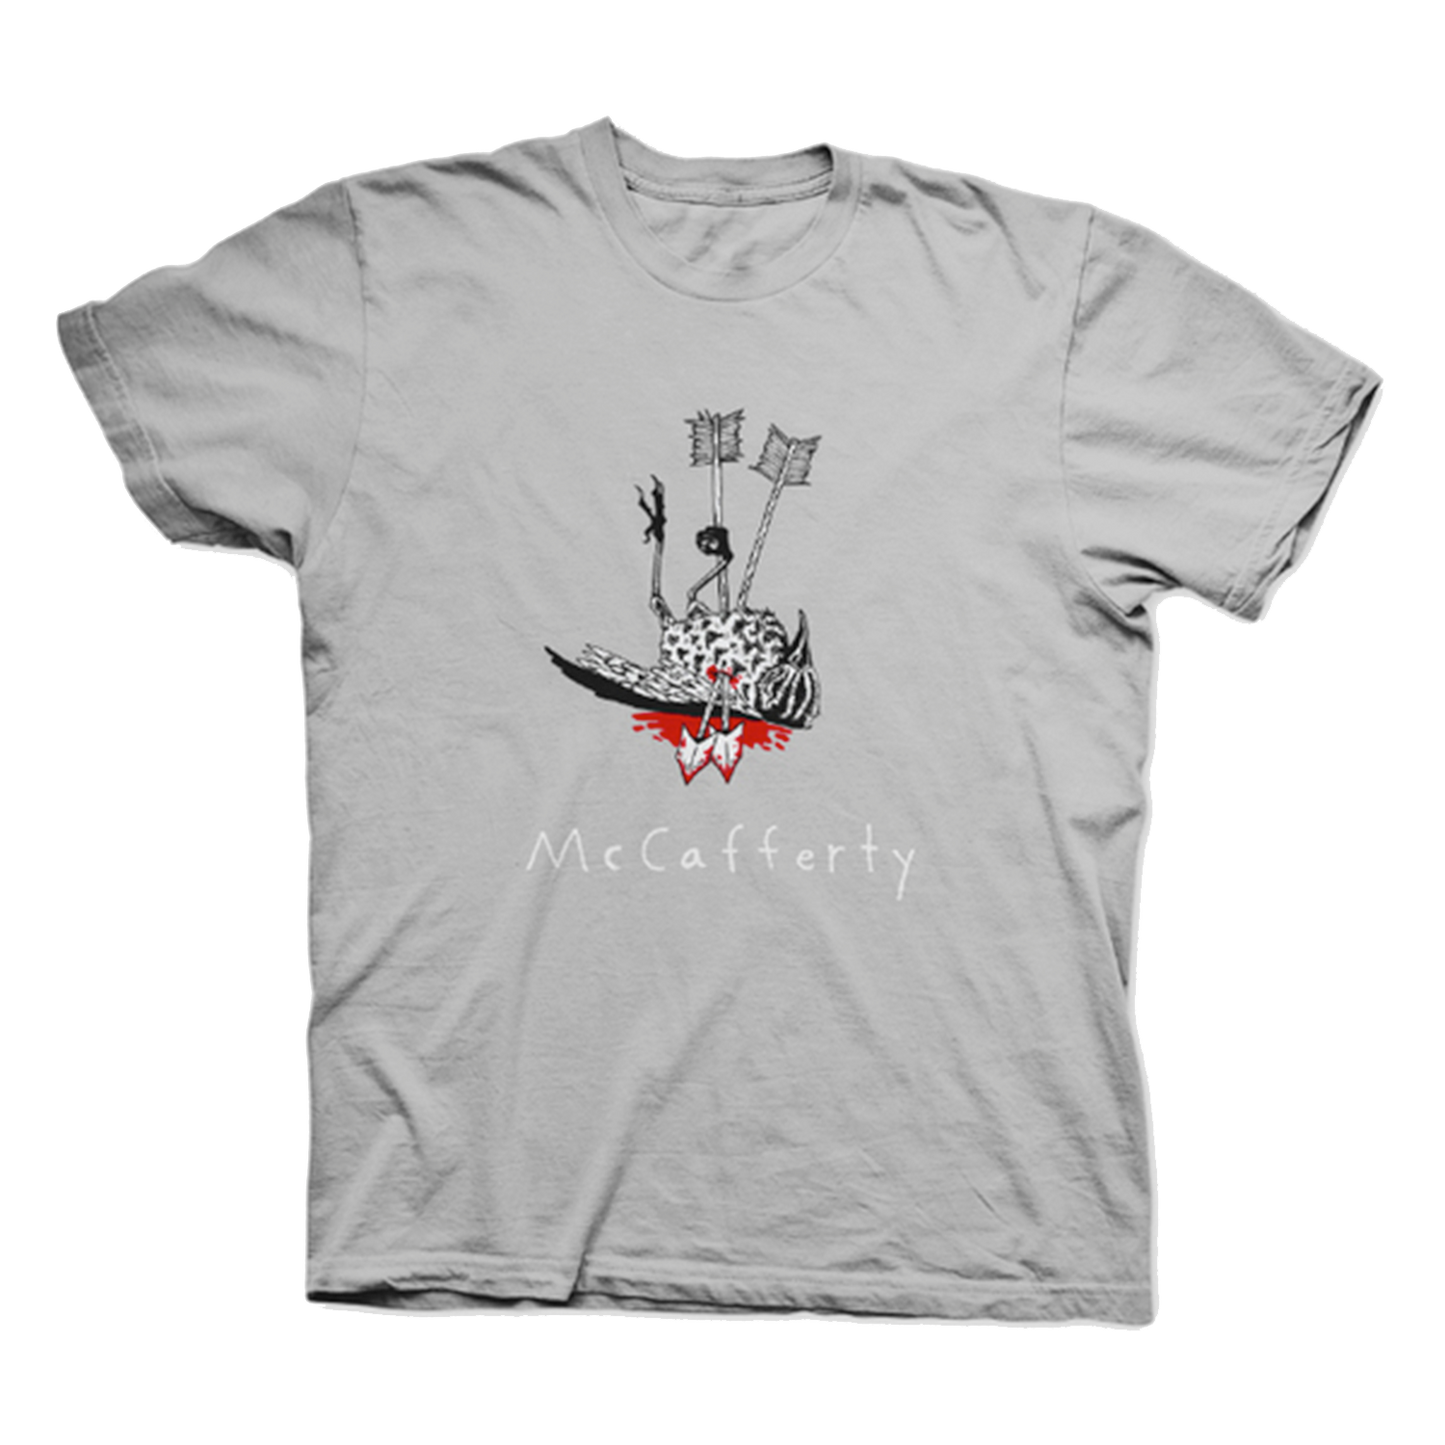 McCafferty - "Dead Bird II" T-Shirt